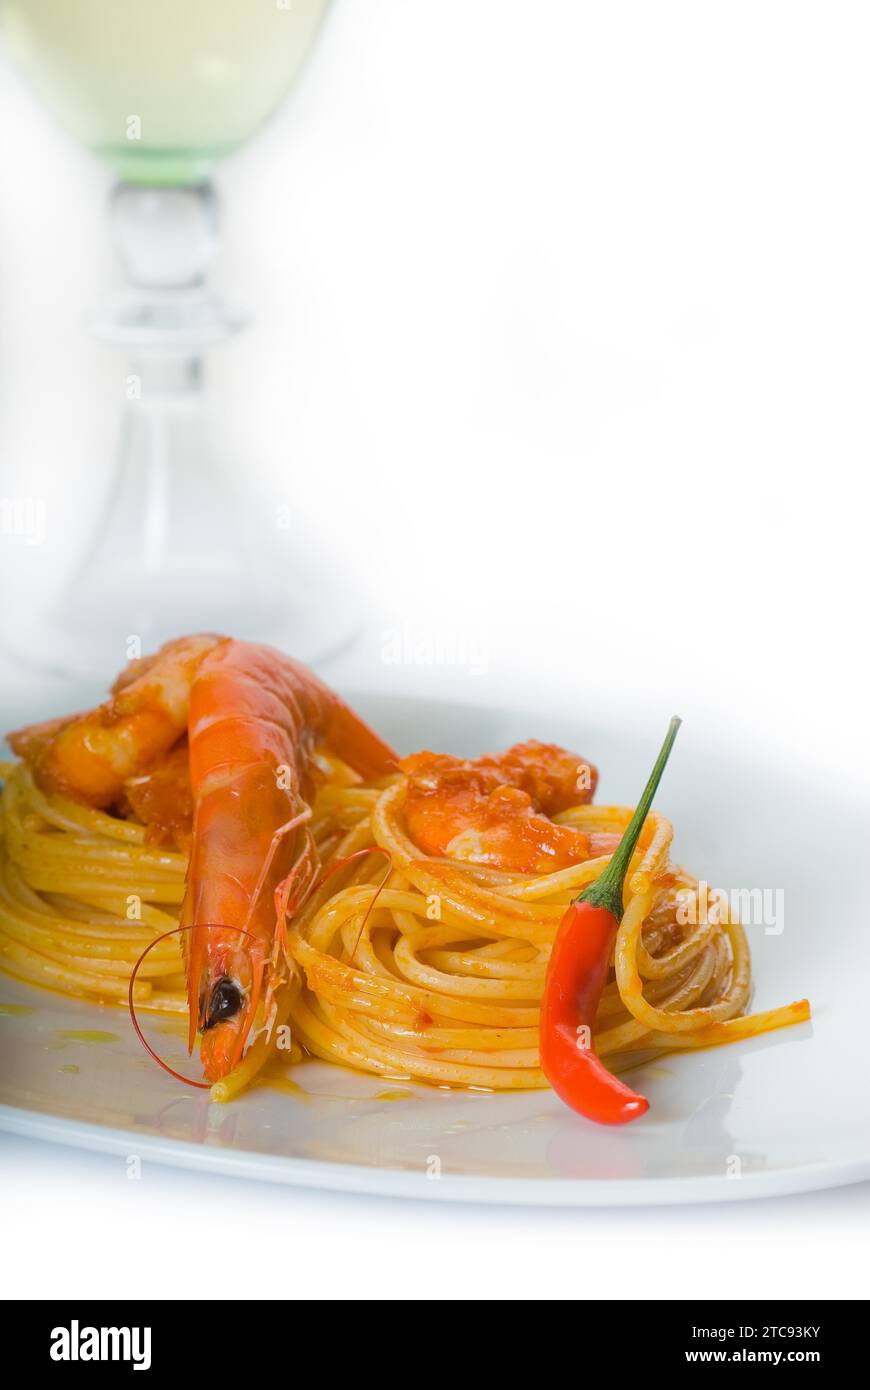 Pasta de espagueti italiana y salsa de camarones picantes frescos, con una hierba de vino blanco seco en el fondo Foto de stock